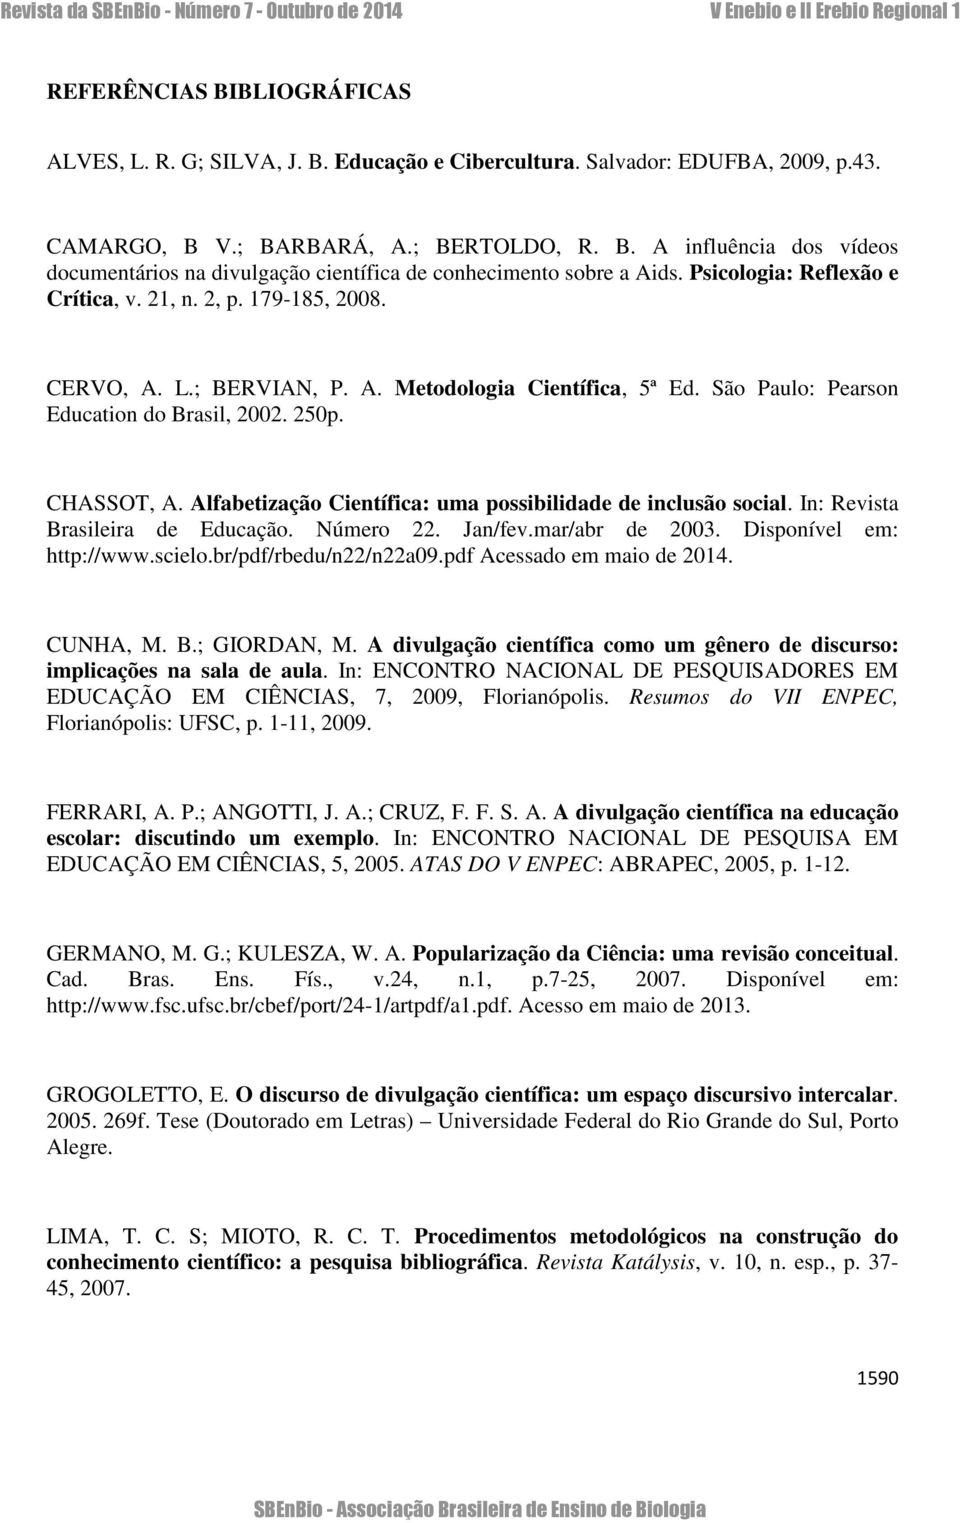 Alfabetização Científica: uma possibilidade de inclusão social. In: Revista Brasileira de Educação. Número 22. Jan/fev.mar/abr de 2003. Disponível em: http://www.scielo.br/pdf/rbedu/n22/n22a09.